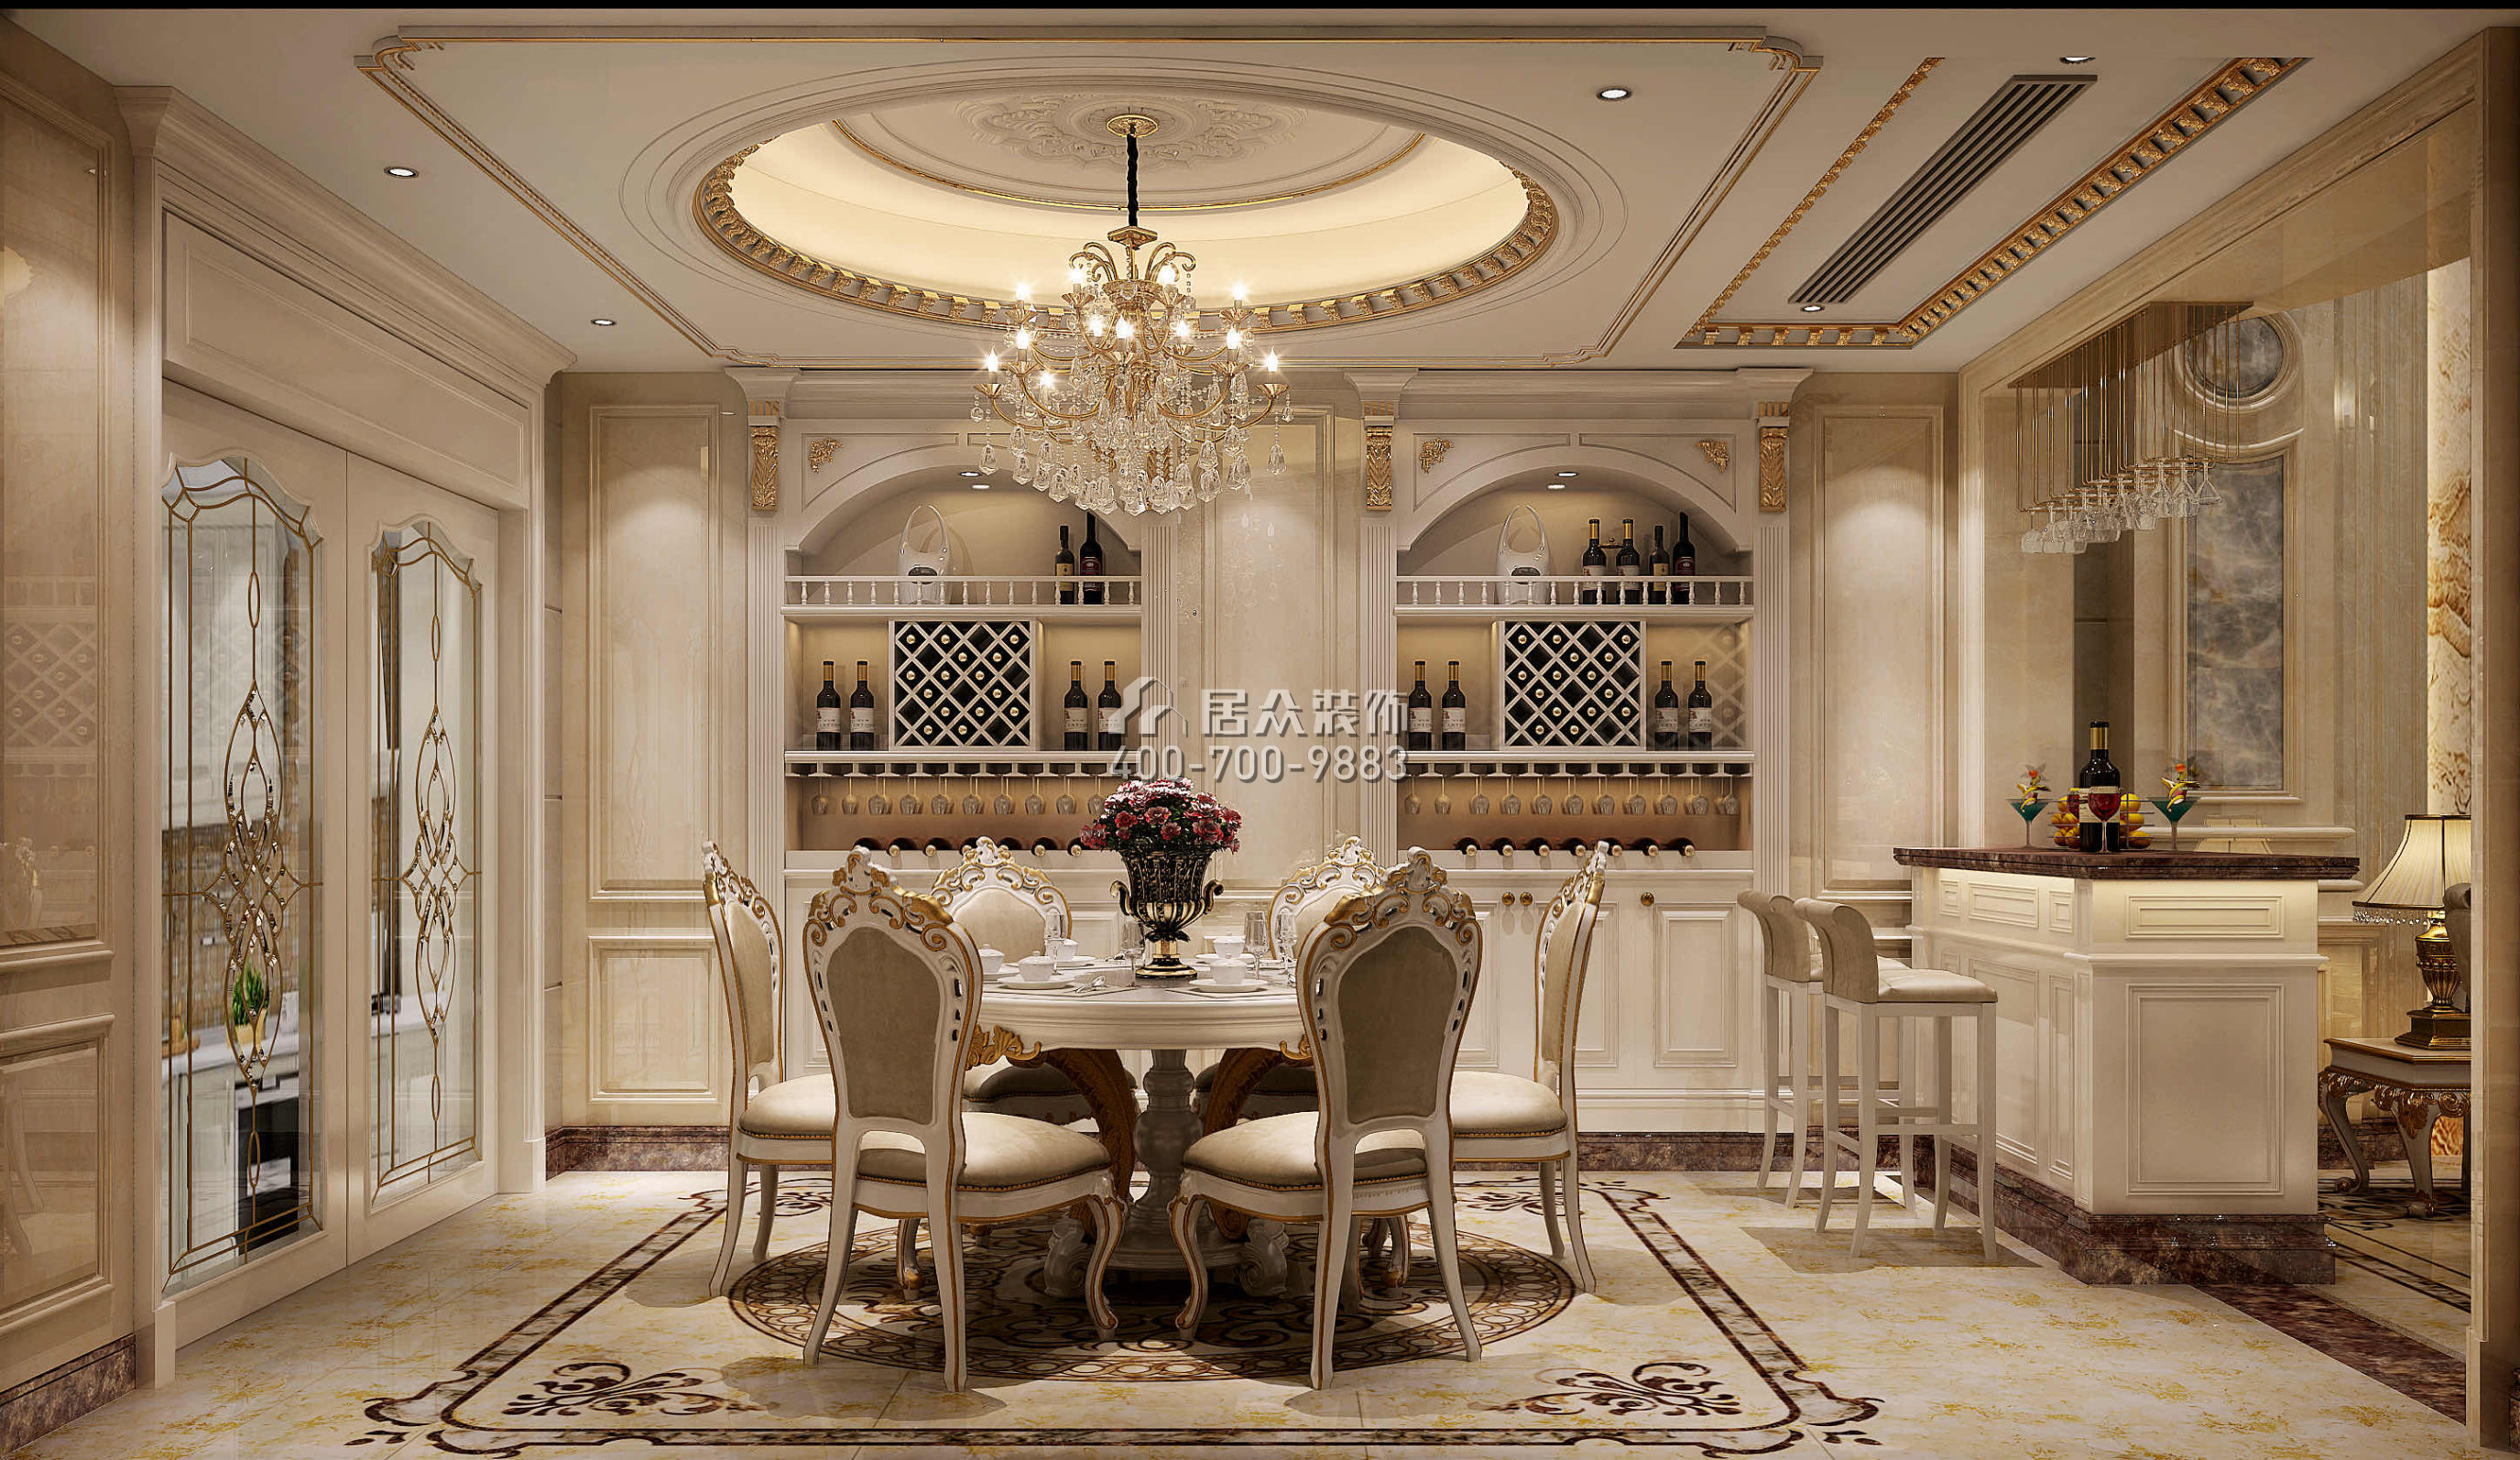 錦繡豪庭380平方米歐式風格別墅戶型餐廳裝修效果圖